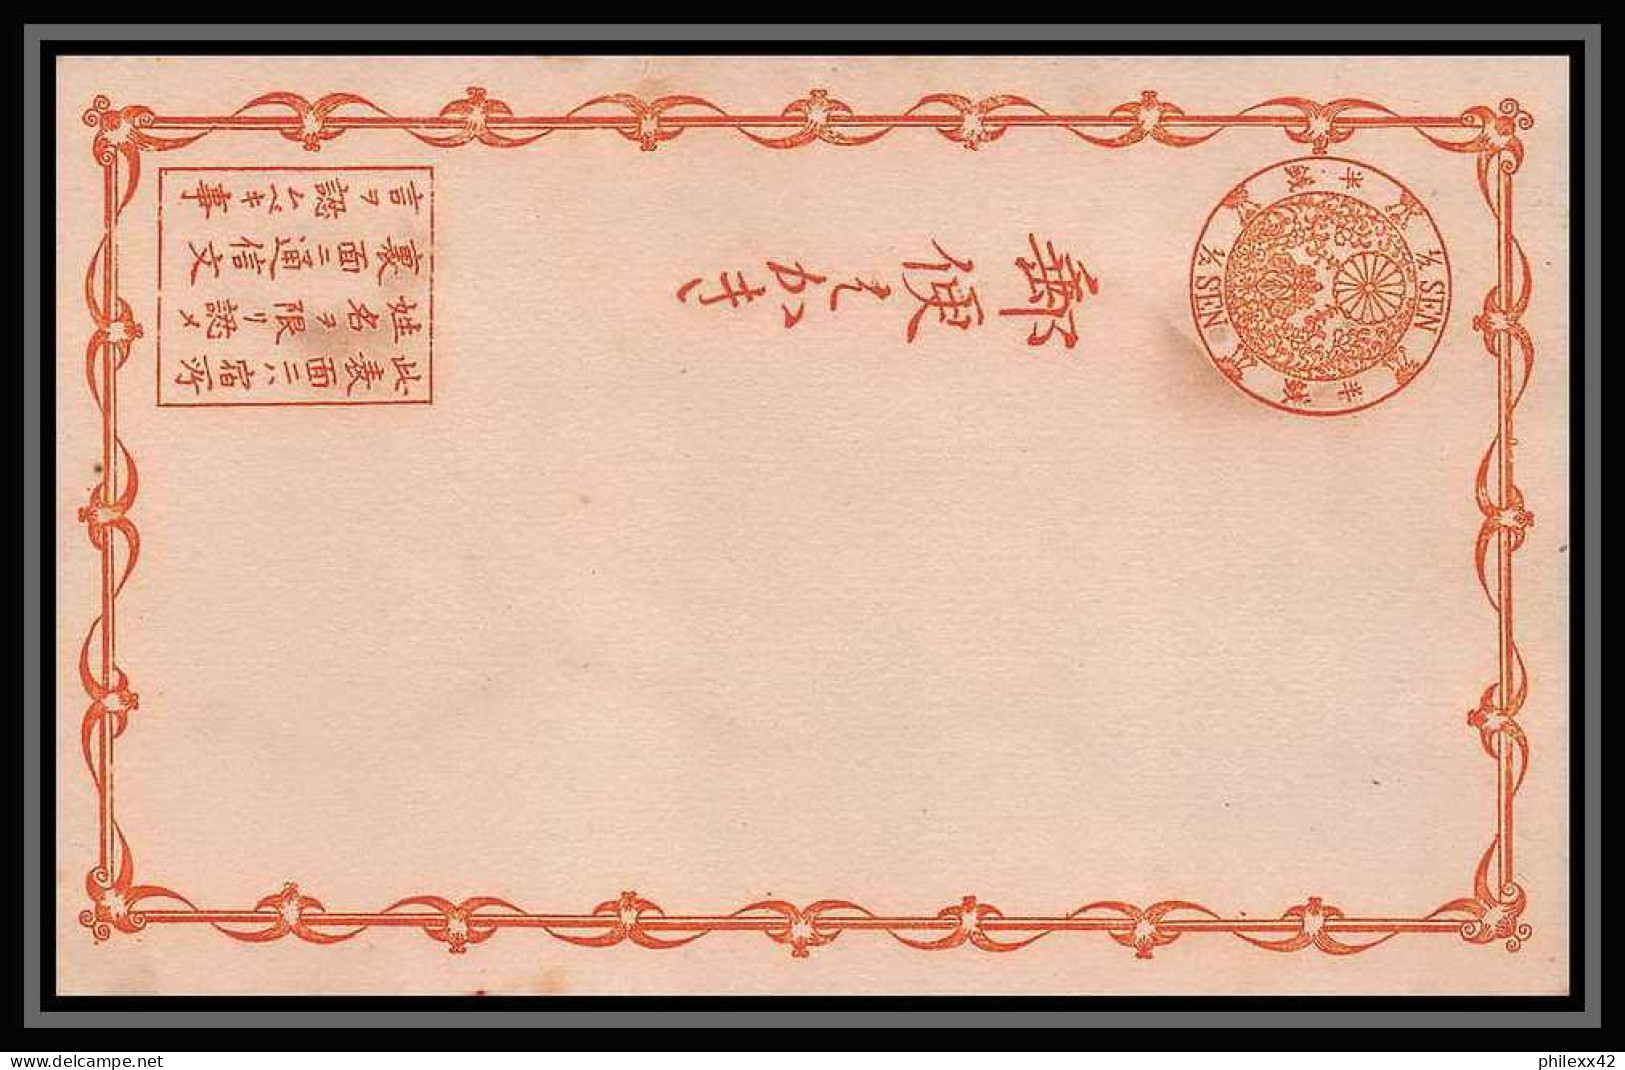 2034/ Japon (Japan) lot de 13 Stationery Carte postale (postcard) N° 9 et N°11 